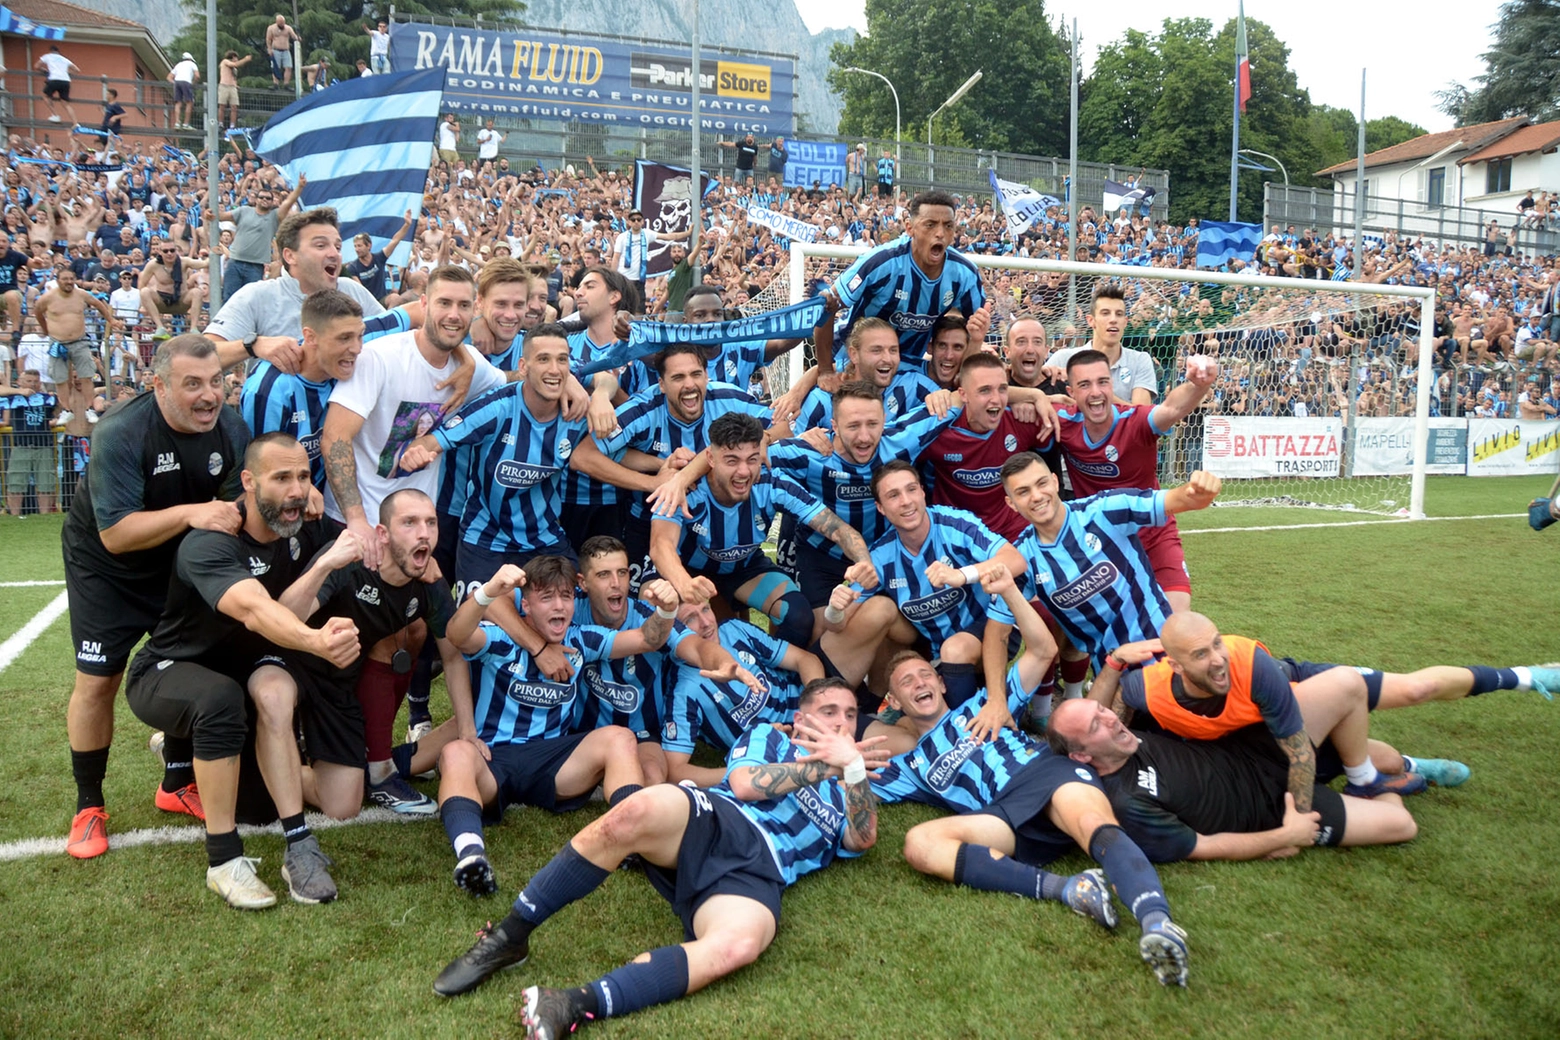 La squadra festeggia la fresca promozione dopo la finale di ritorno playoff  contro il Foggia giocata a Lecco domenica 18 giugno scorso